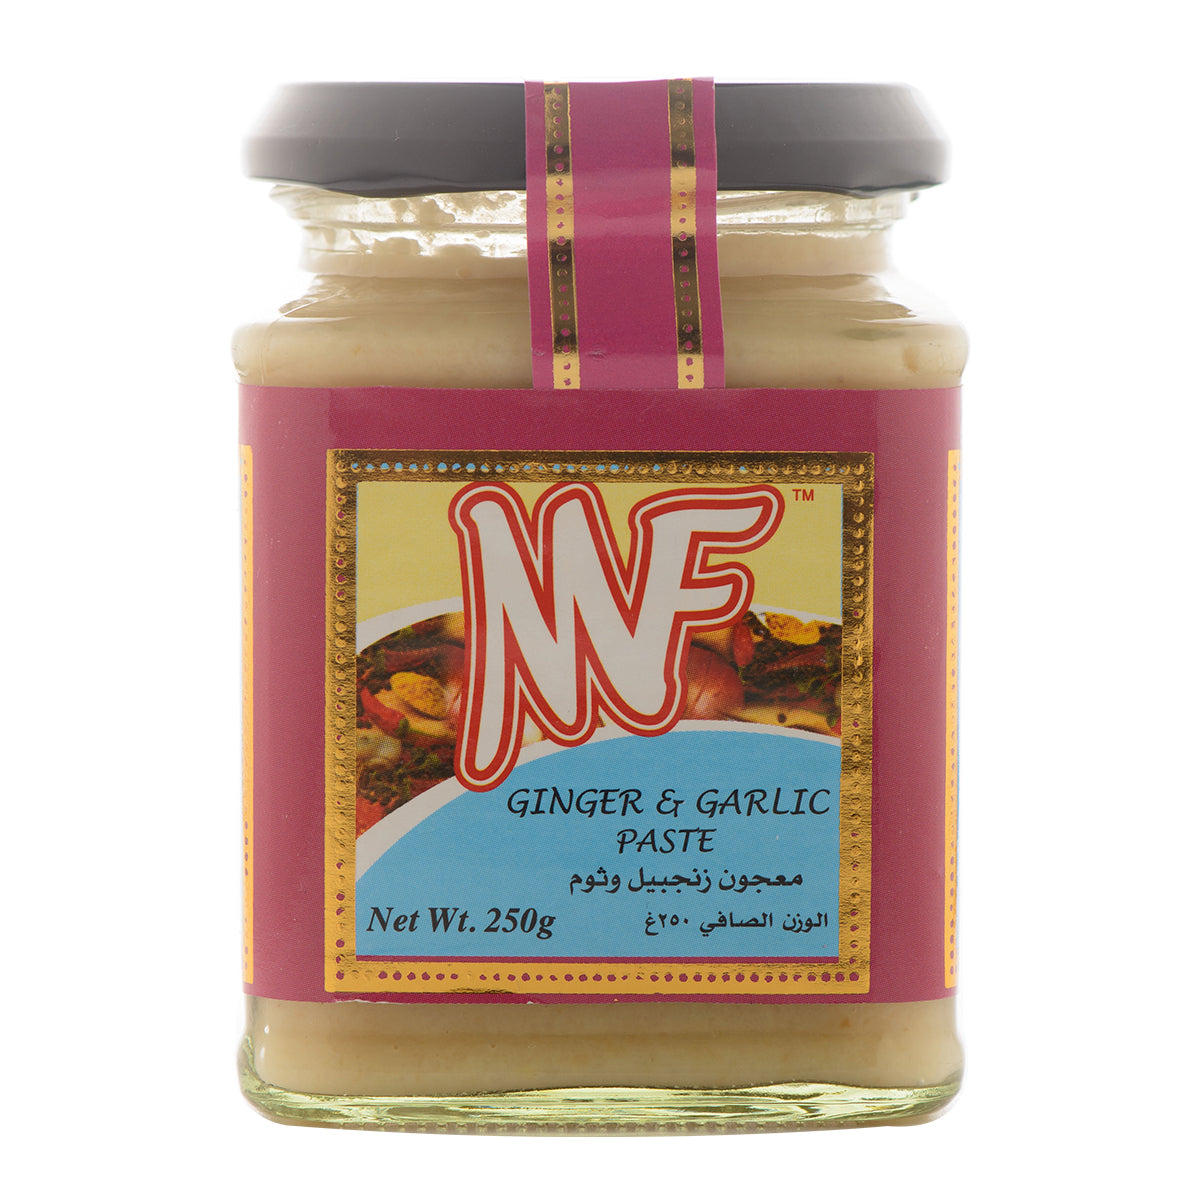 MF Ginger & Garlic Paste 250g